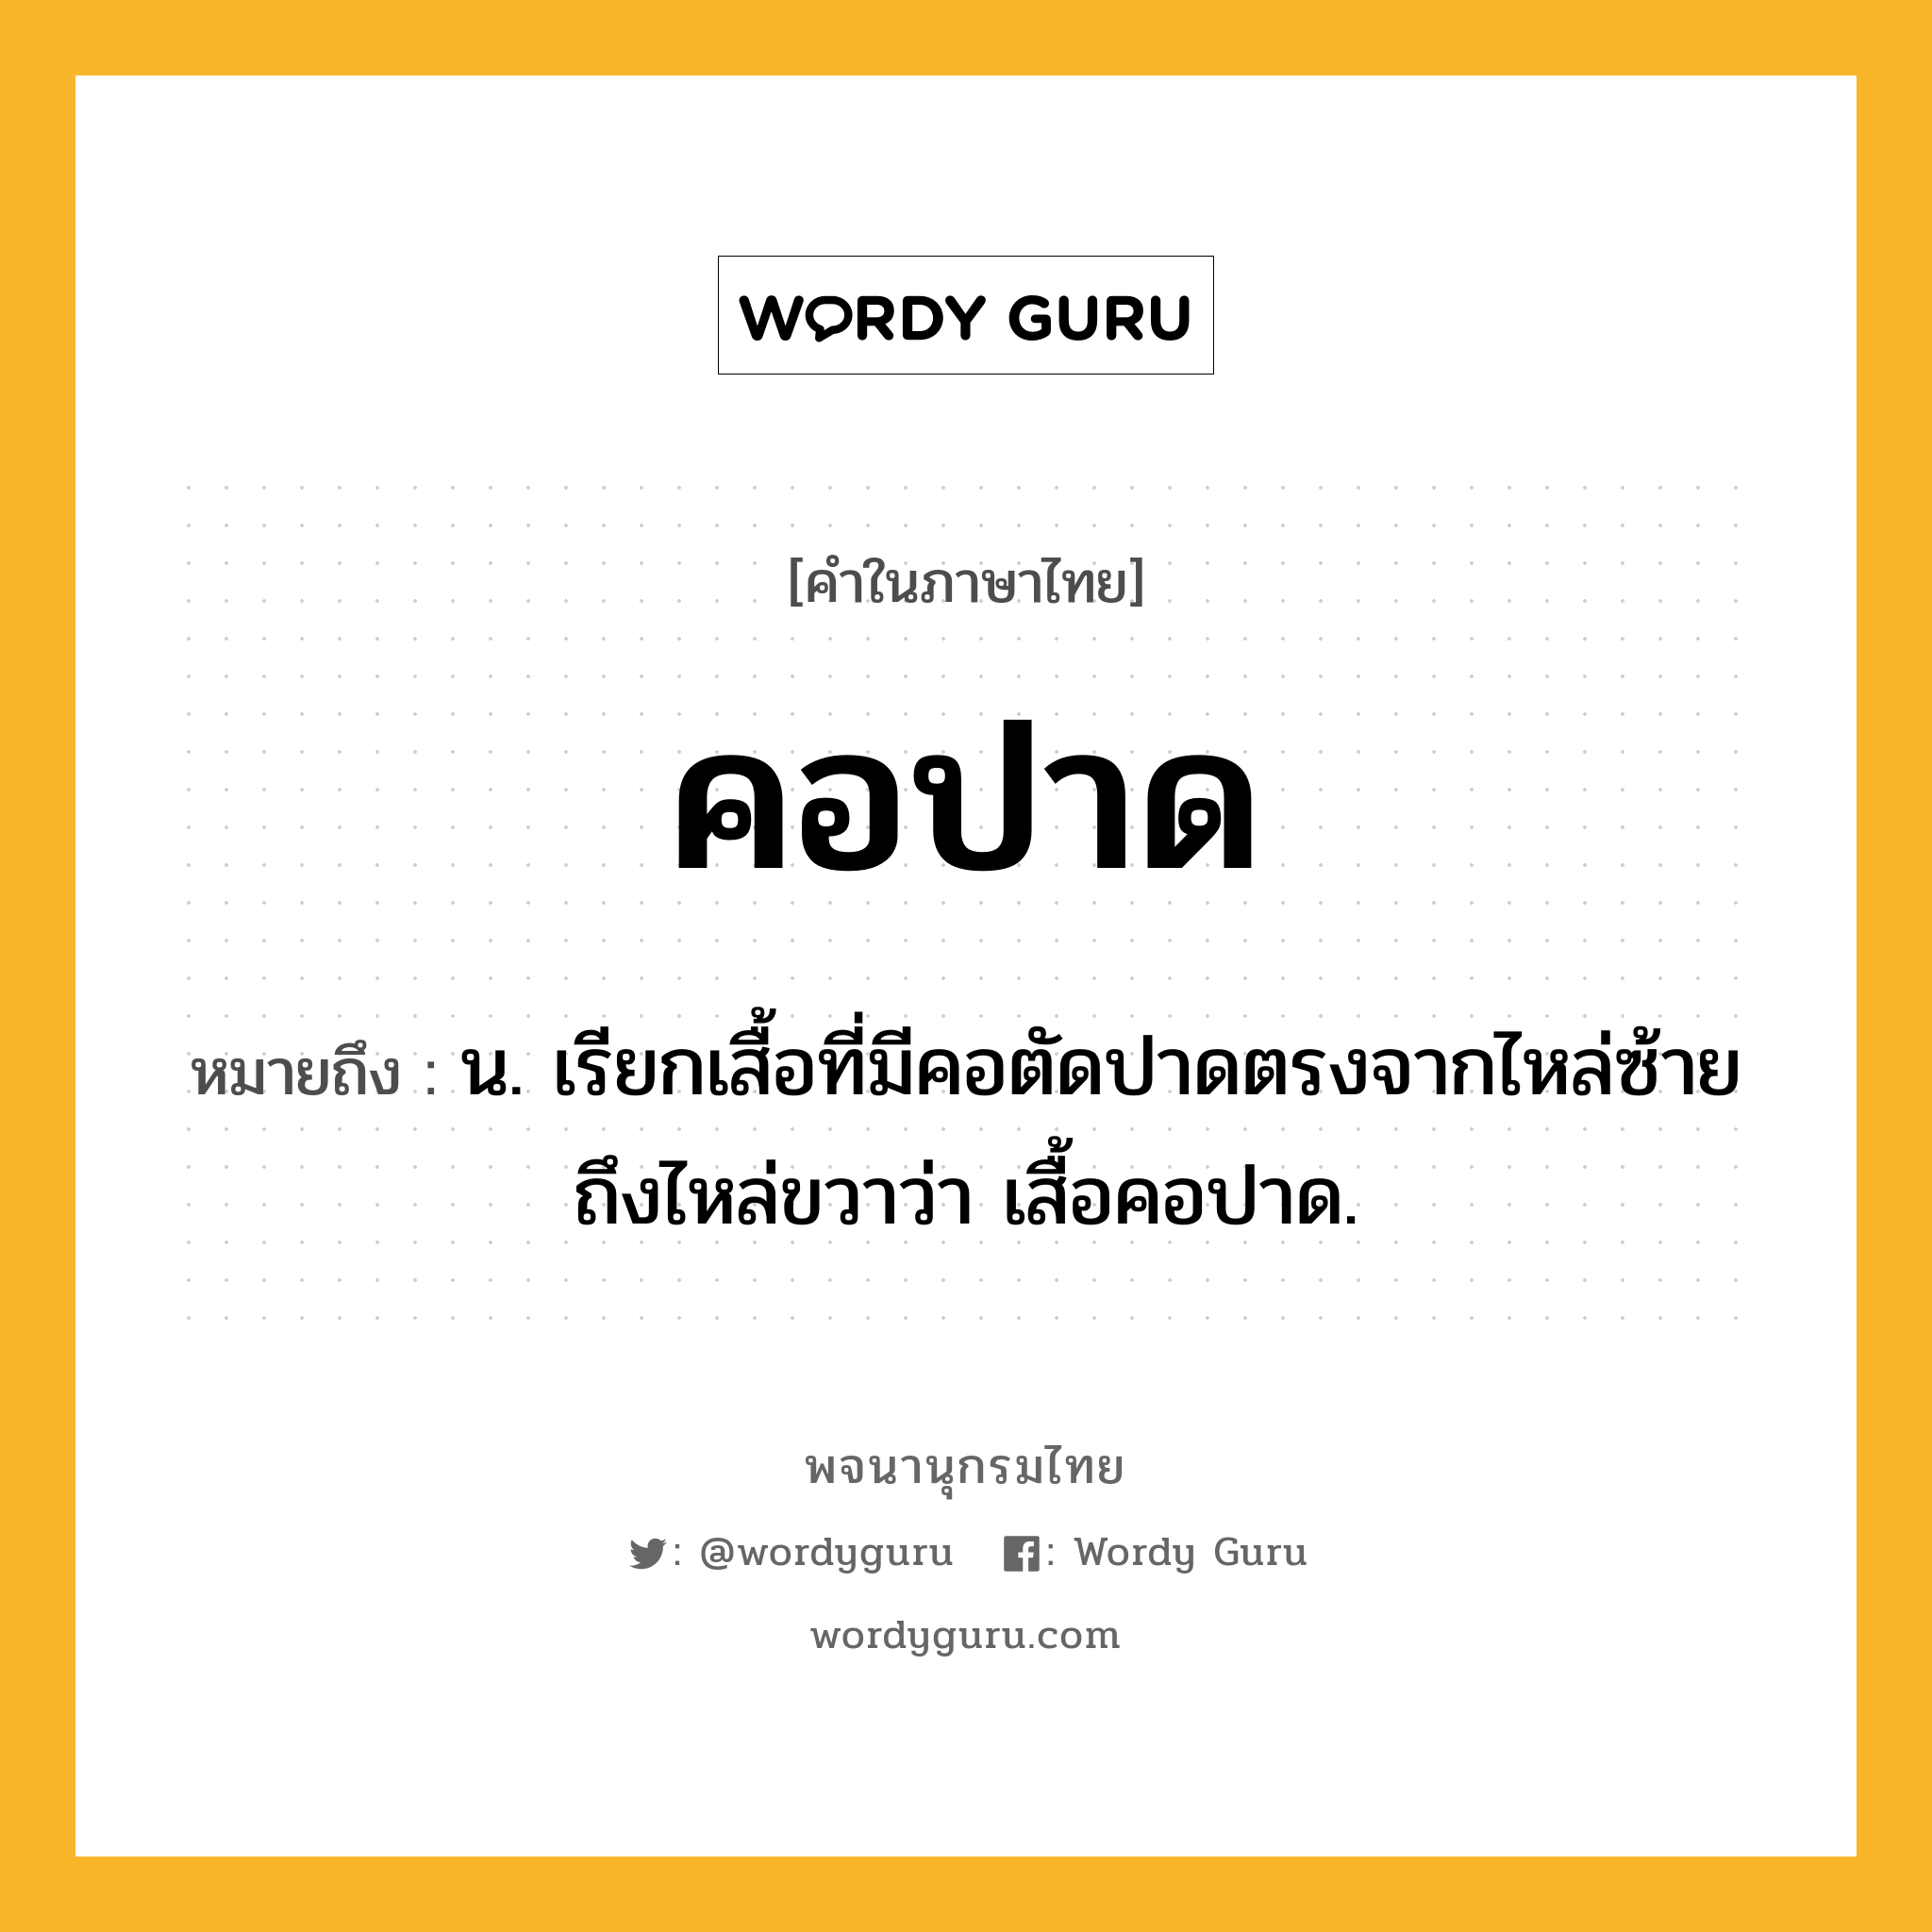 คอปาด หมายถึงอะไร?, คำในภาษาไทย คอปาด หมายถึง น. เรียกเสื้อที่มีคอตัดปาดตรงจากไหล่ซ้ายถึงไหล่ขวาว่า เสื้อคอปาด.